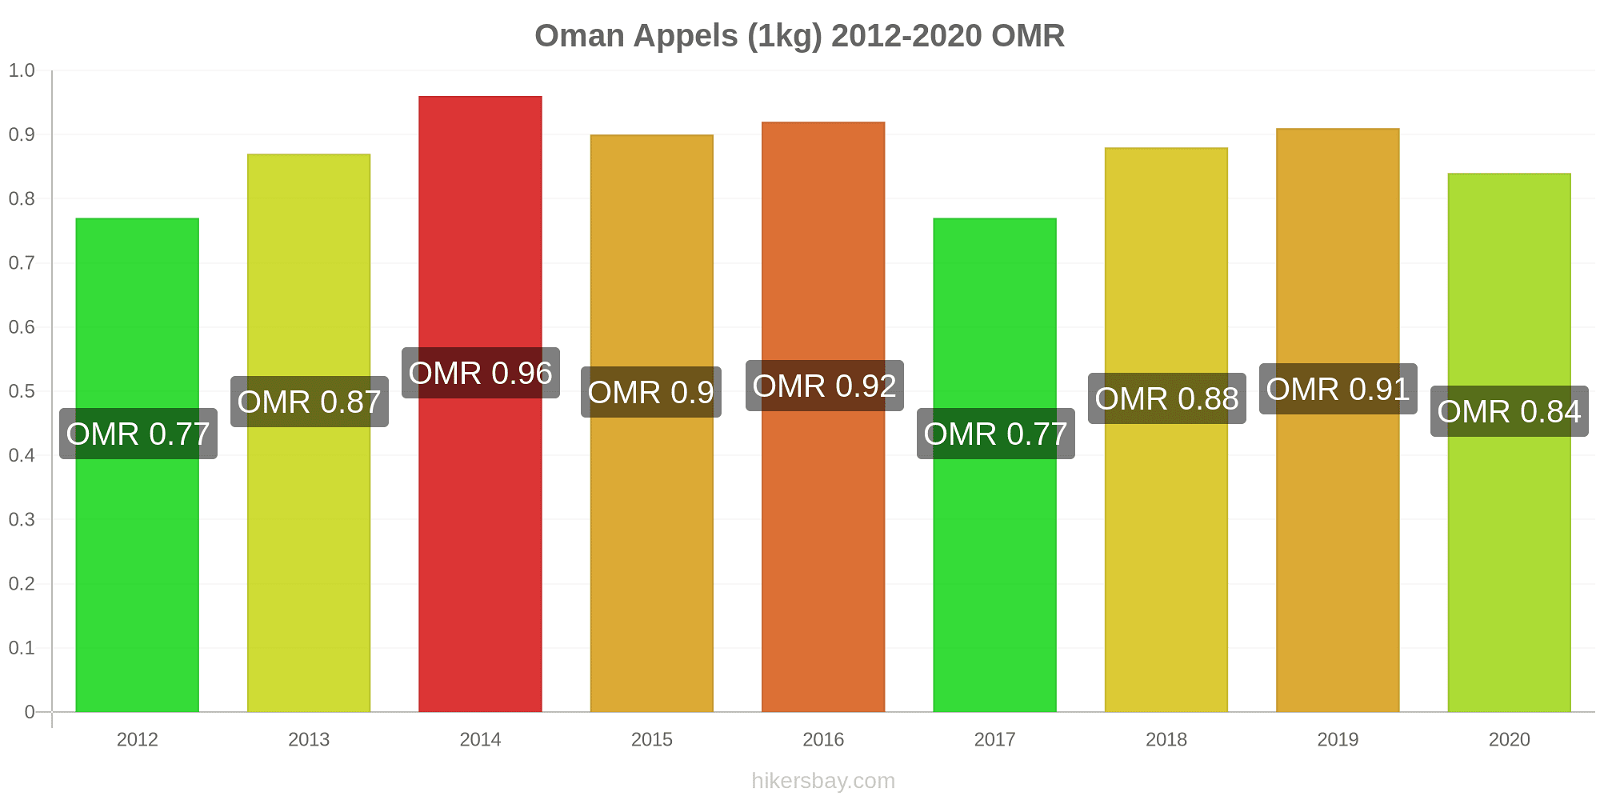 Oman prijswijzigingen Appels (1kg) hikersbay.com